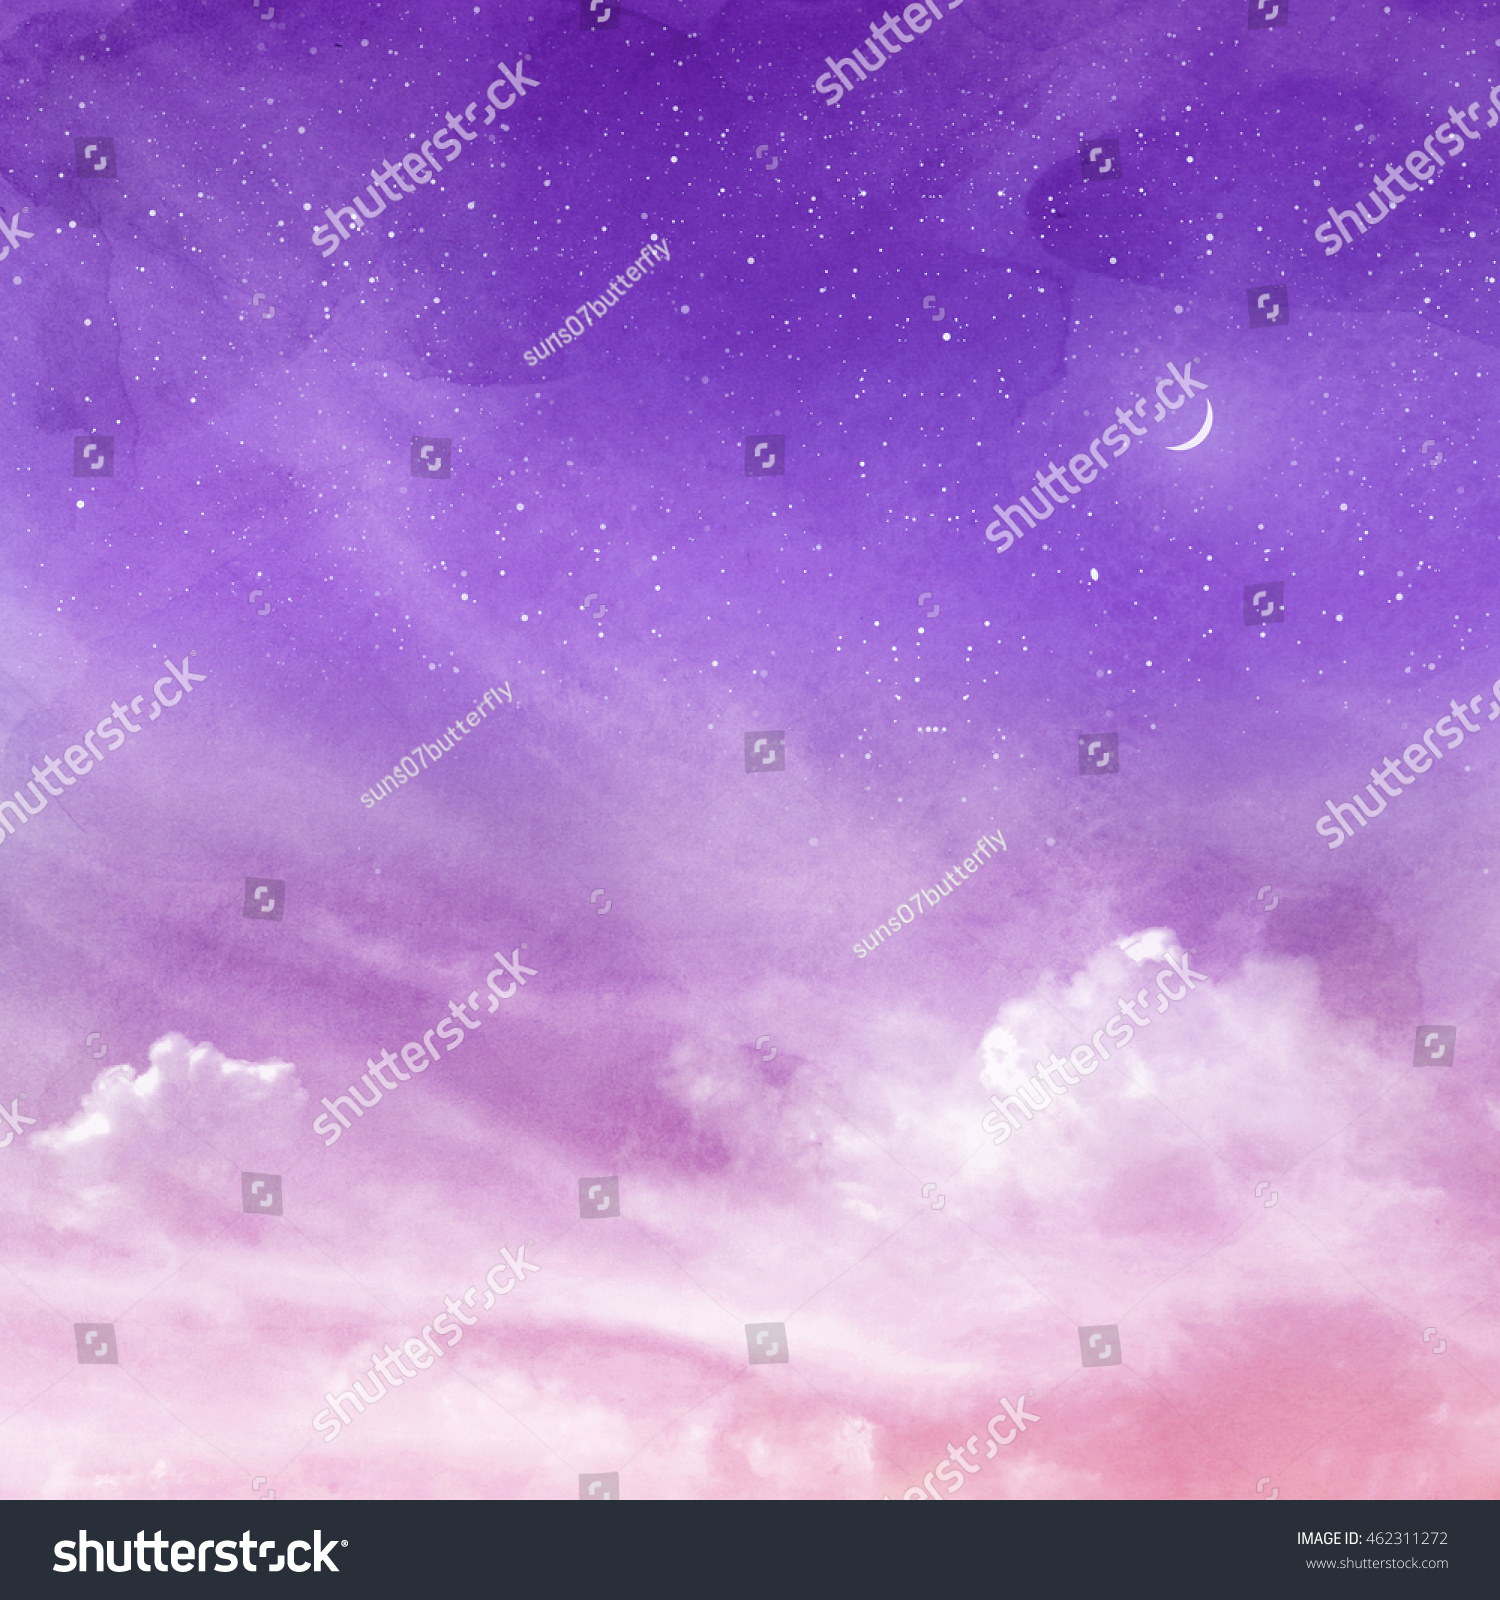 28,448 Moon pink sky Images, Stock Photos & Vectors | Shutterstock